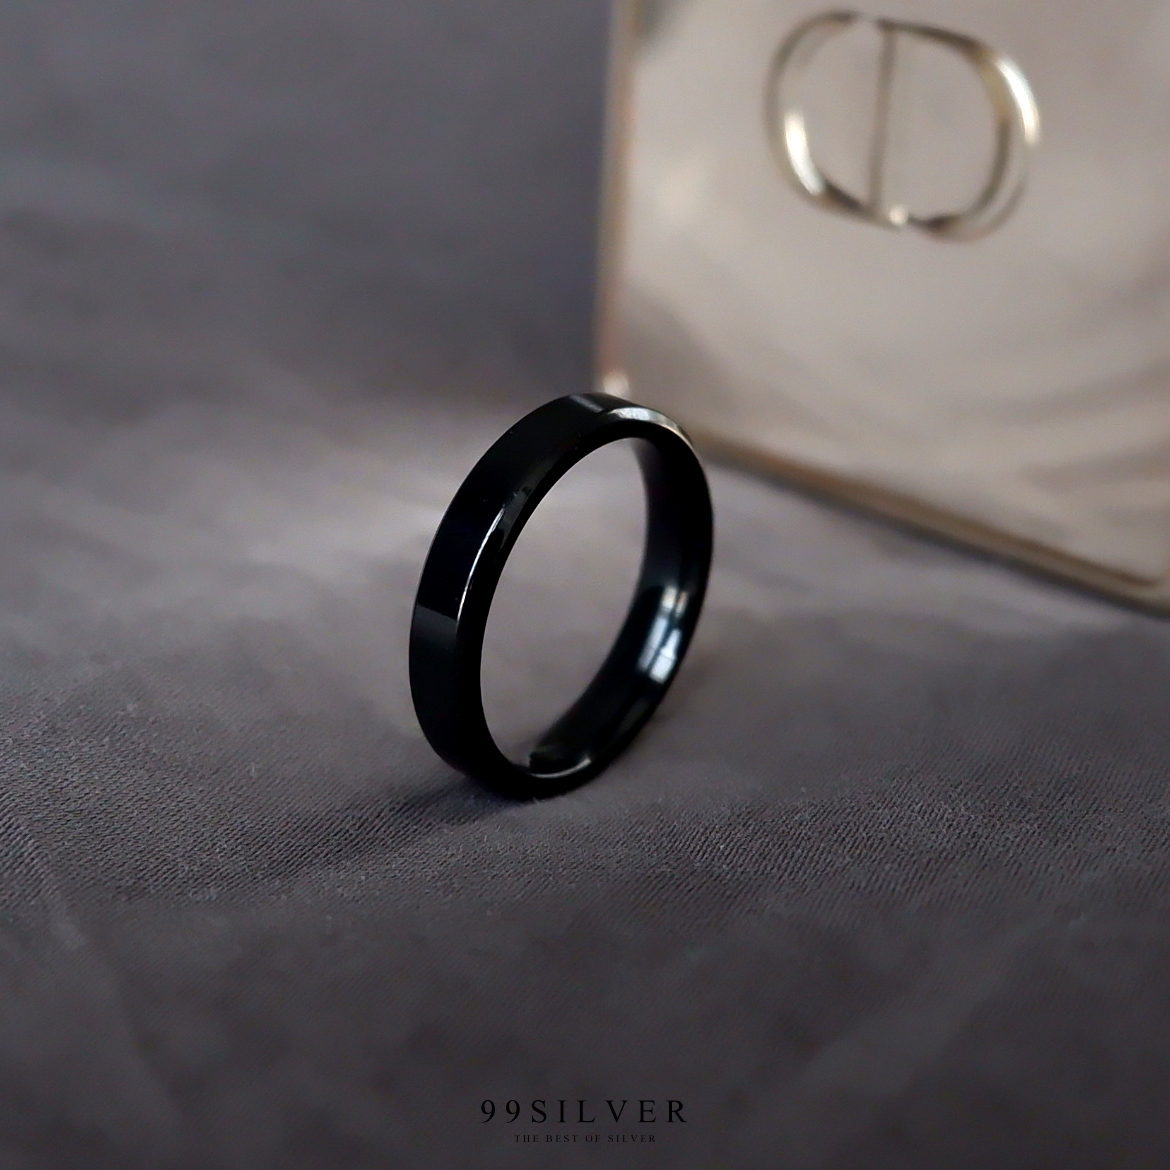 แหวนสแตนเลสแบล๊คไทเทเนี่ยมแท้หน้ากว้าง 4 มิล ขอบมุมตัดสวยงาม ตัวเรือนดำเงา